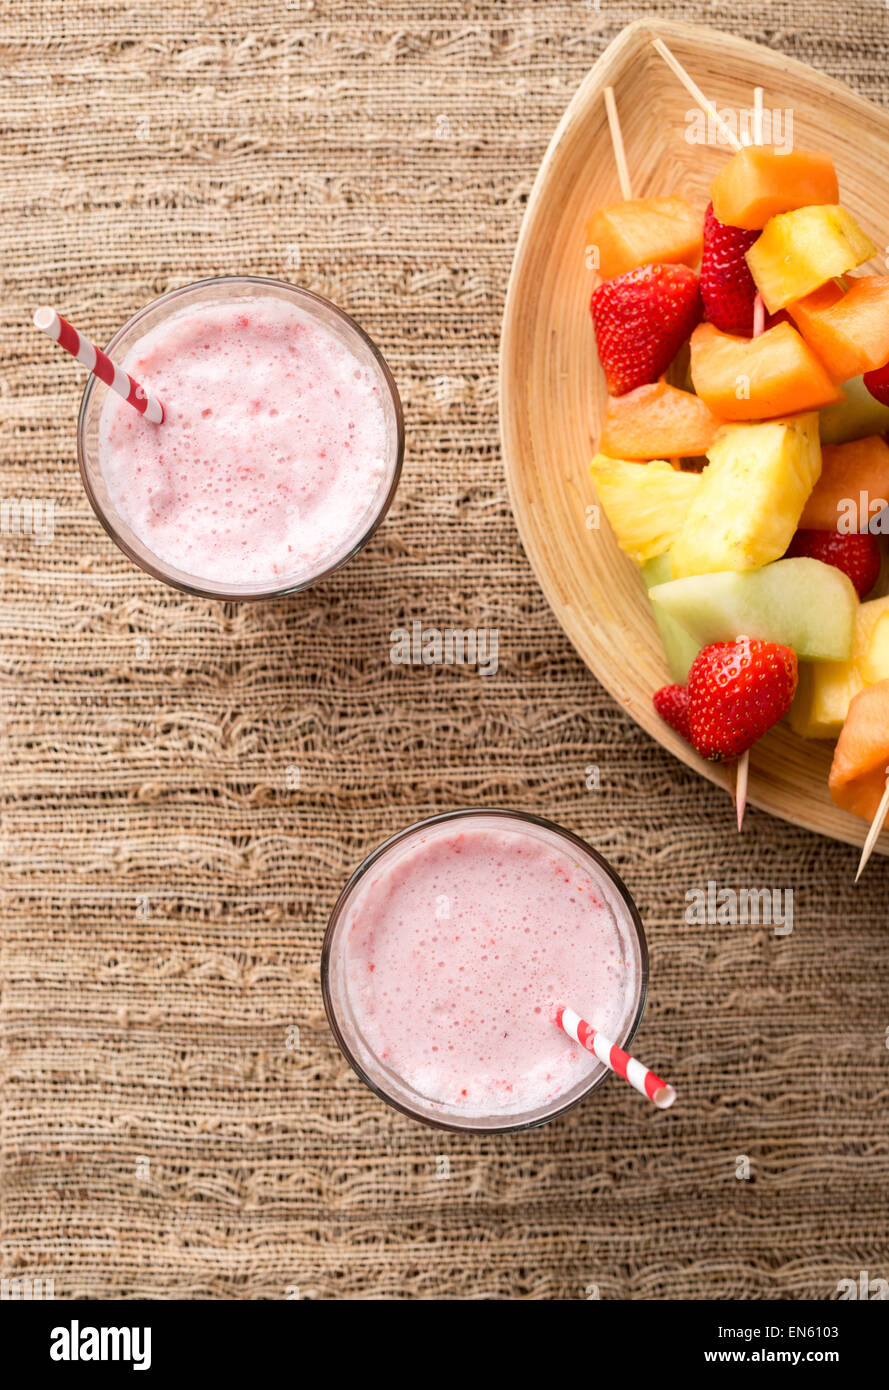 Frullati di fragole e spiedini di frutta - frutta su spiedini - sul vassoio Foto Stock